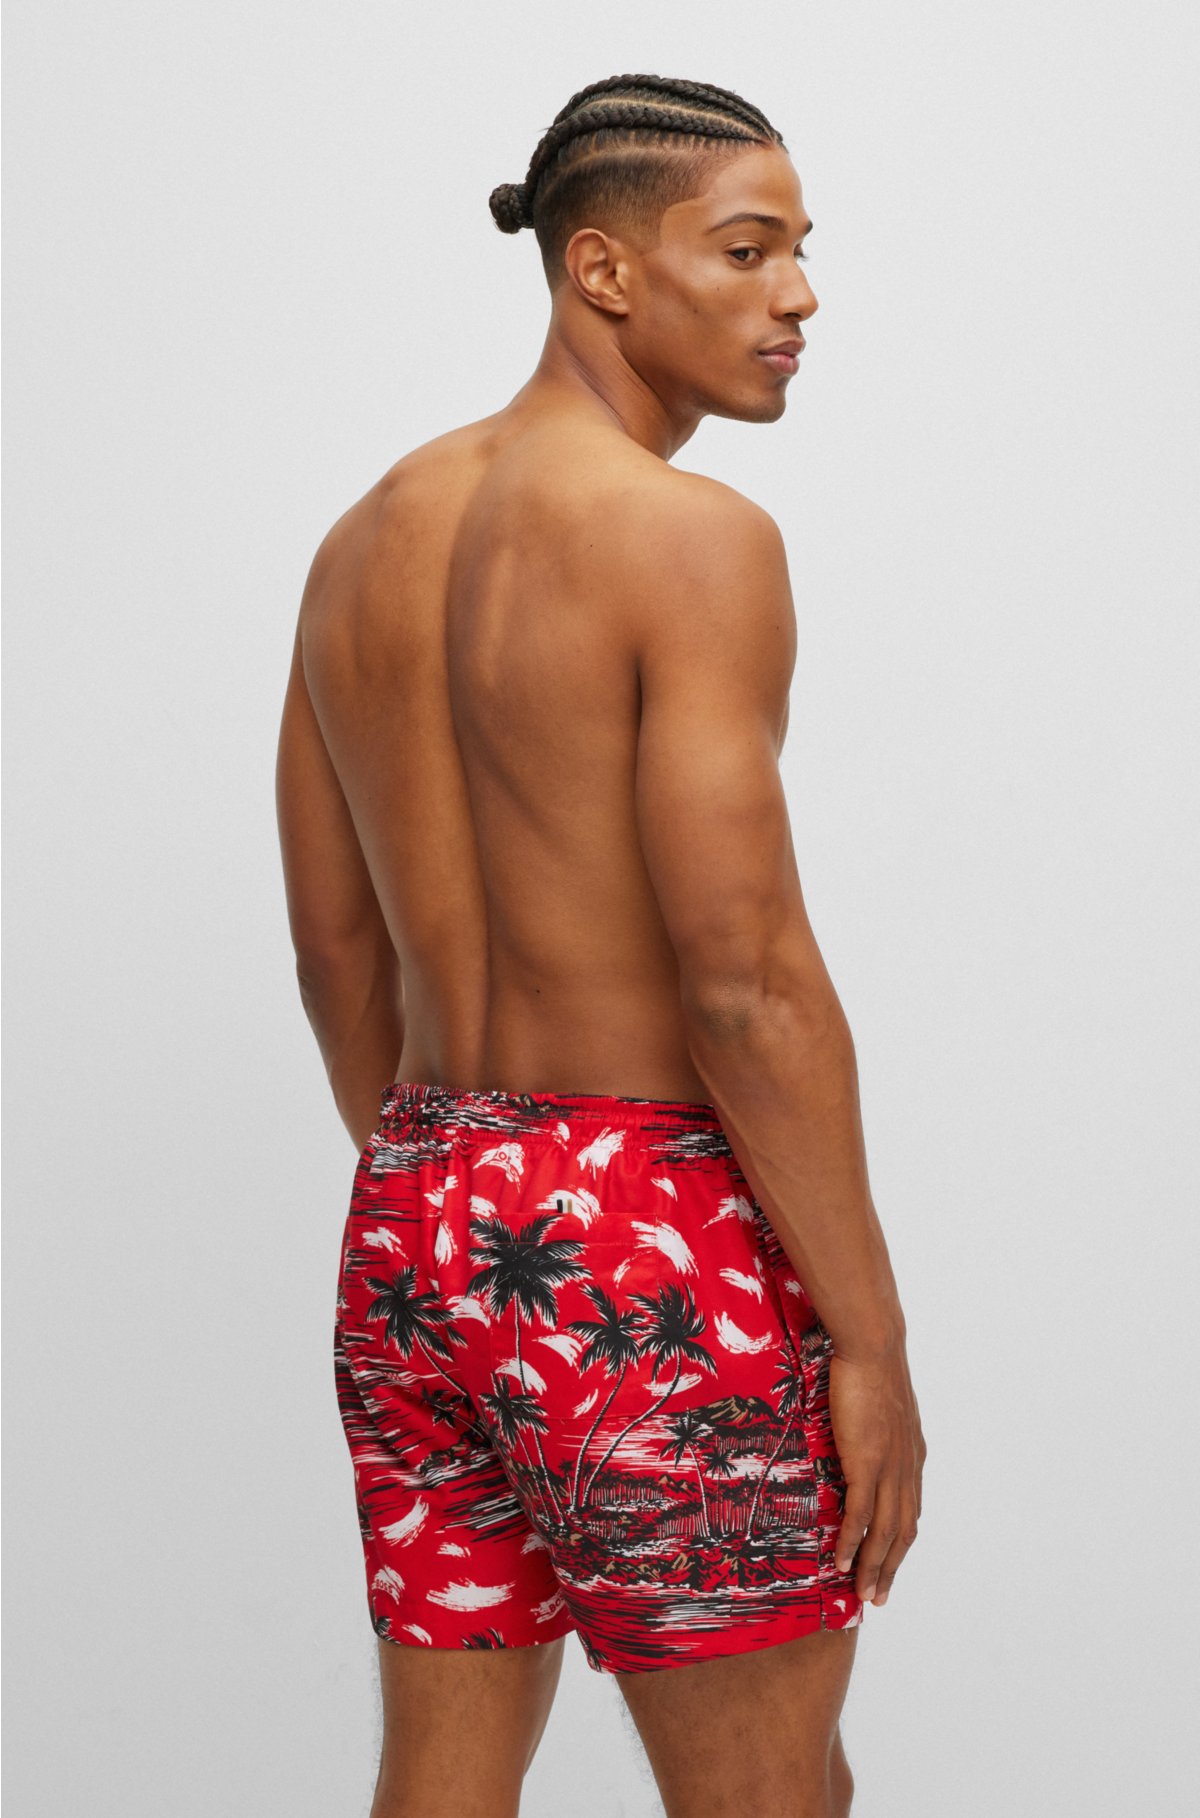 BOSS - Monogram-print swim shorts in quick-drying fabric